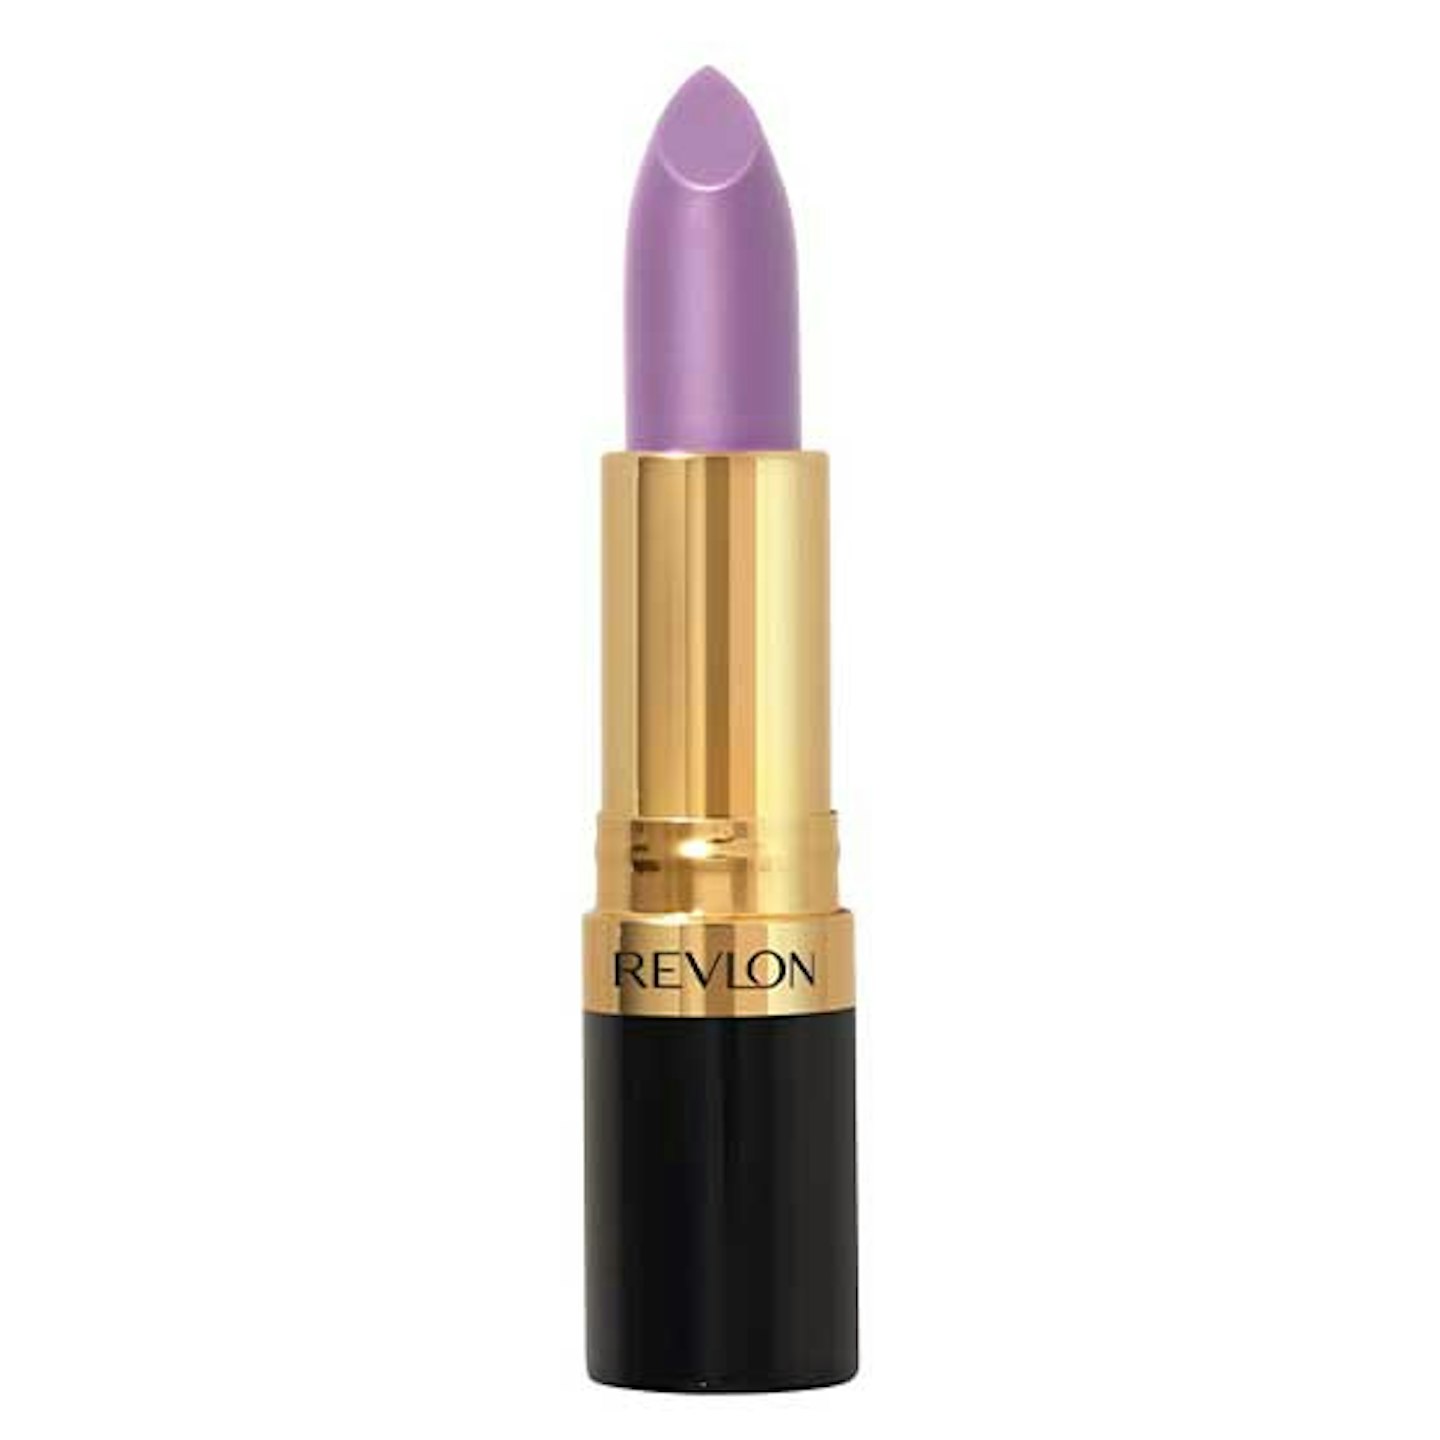 REVLON - Super Lustrous Lipstick, Lilac Mist